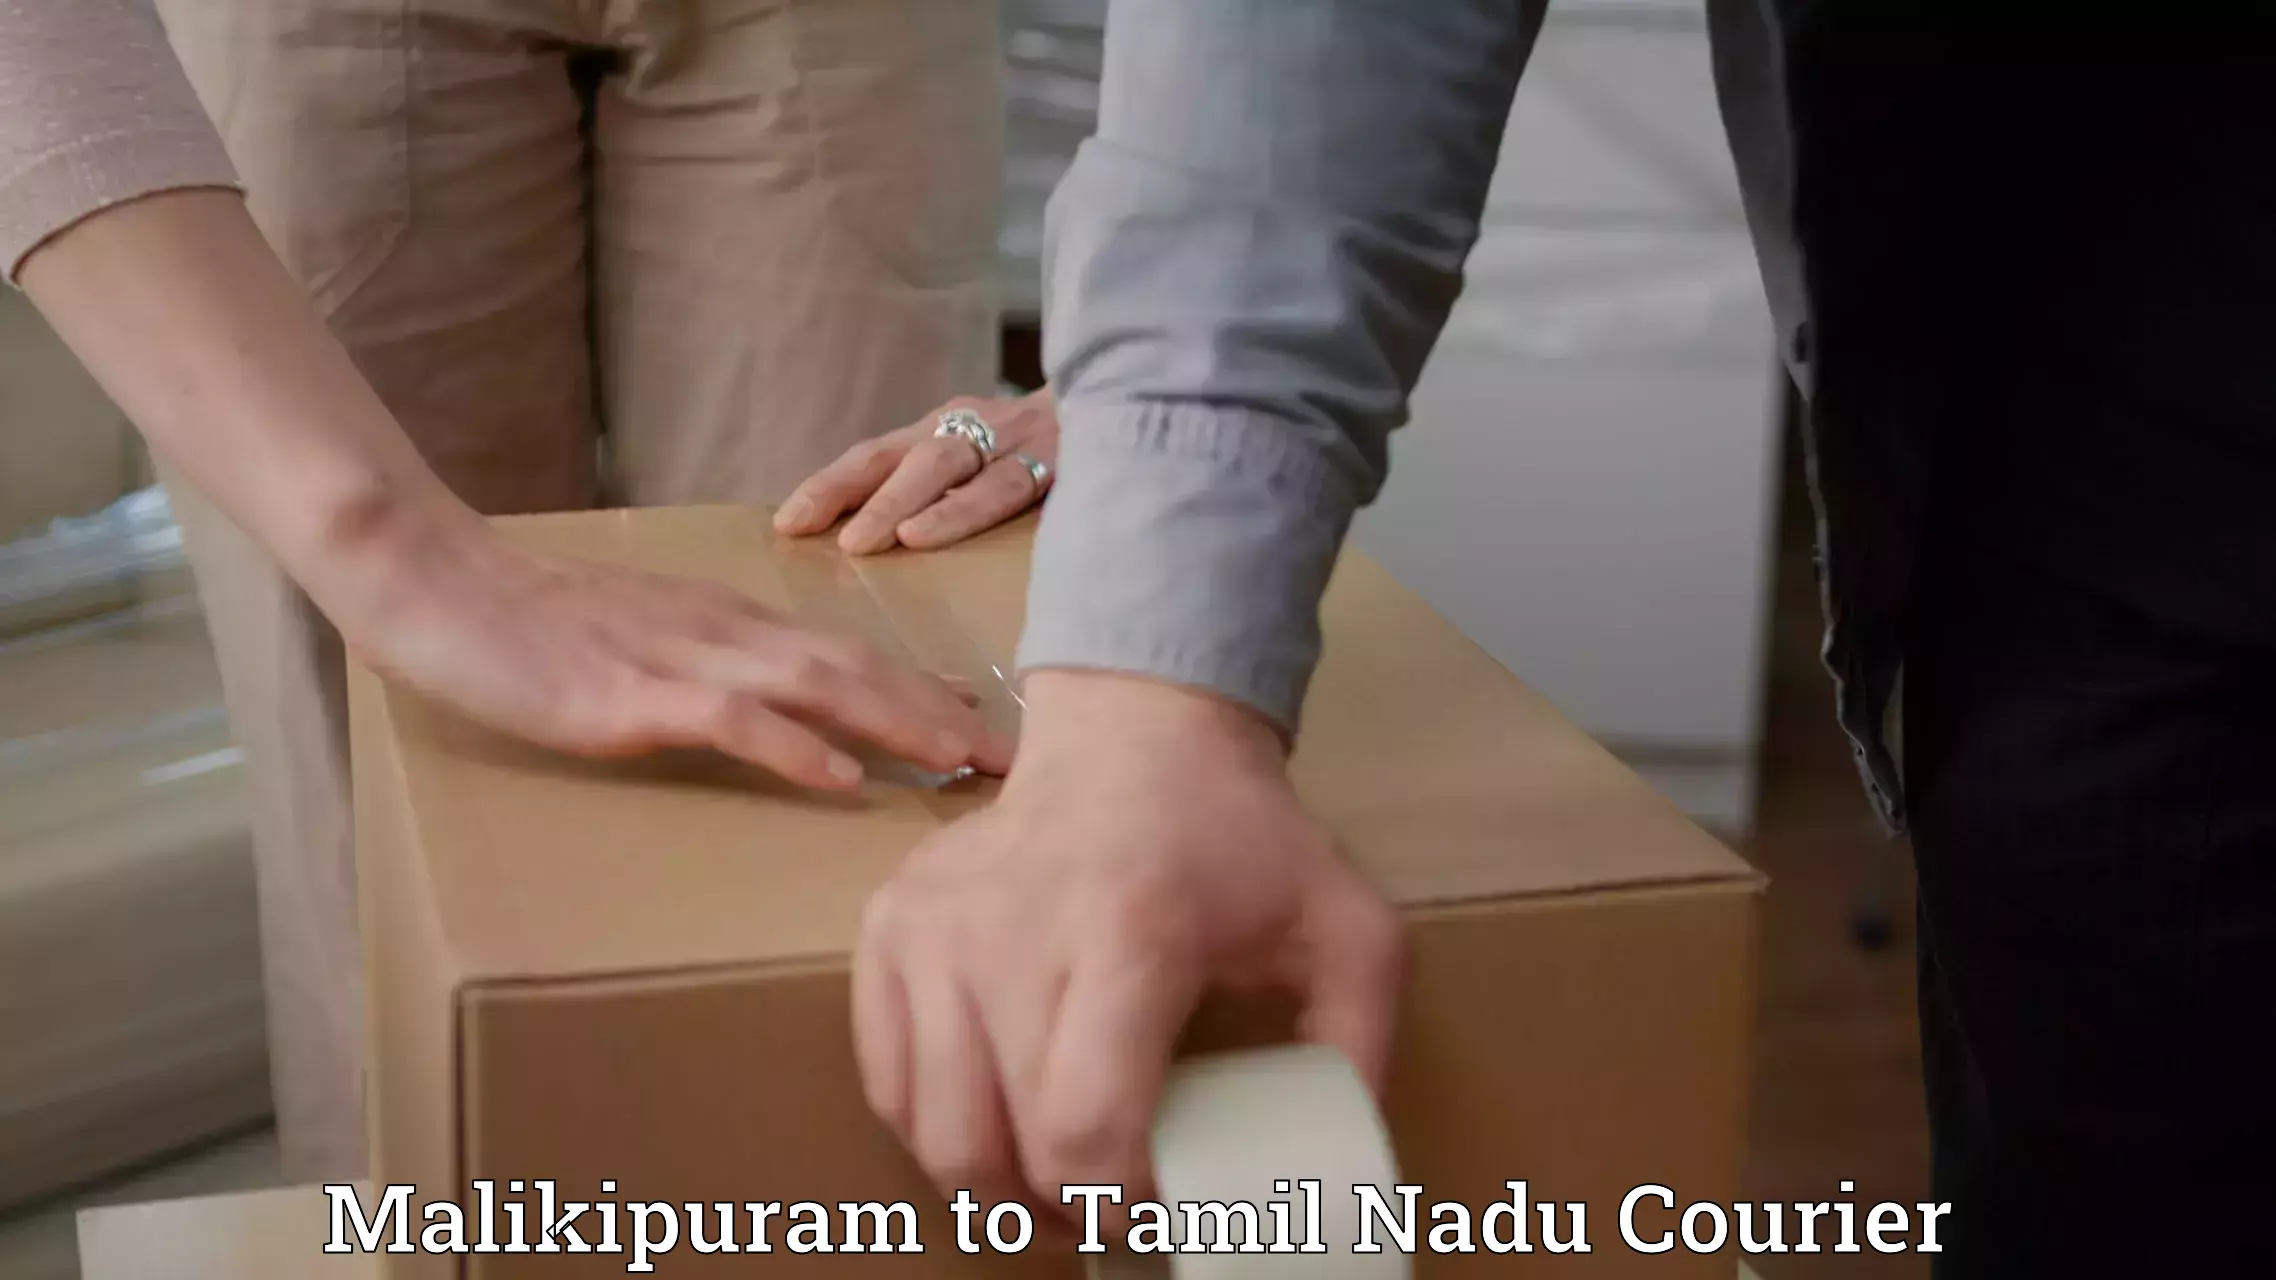 Express logistics providers Malikipuram to Tamil Nadu